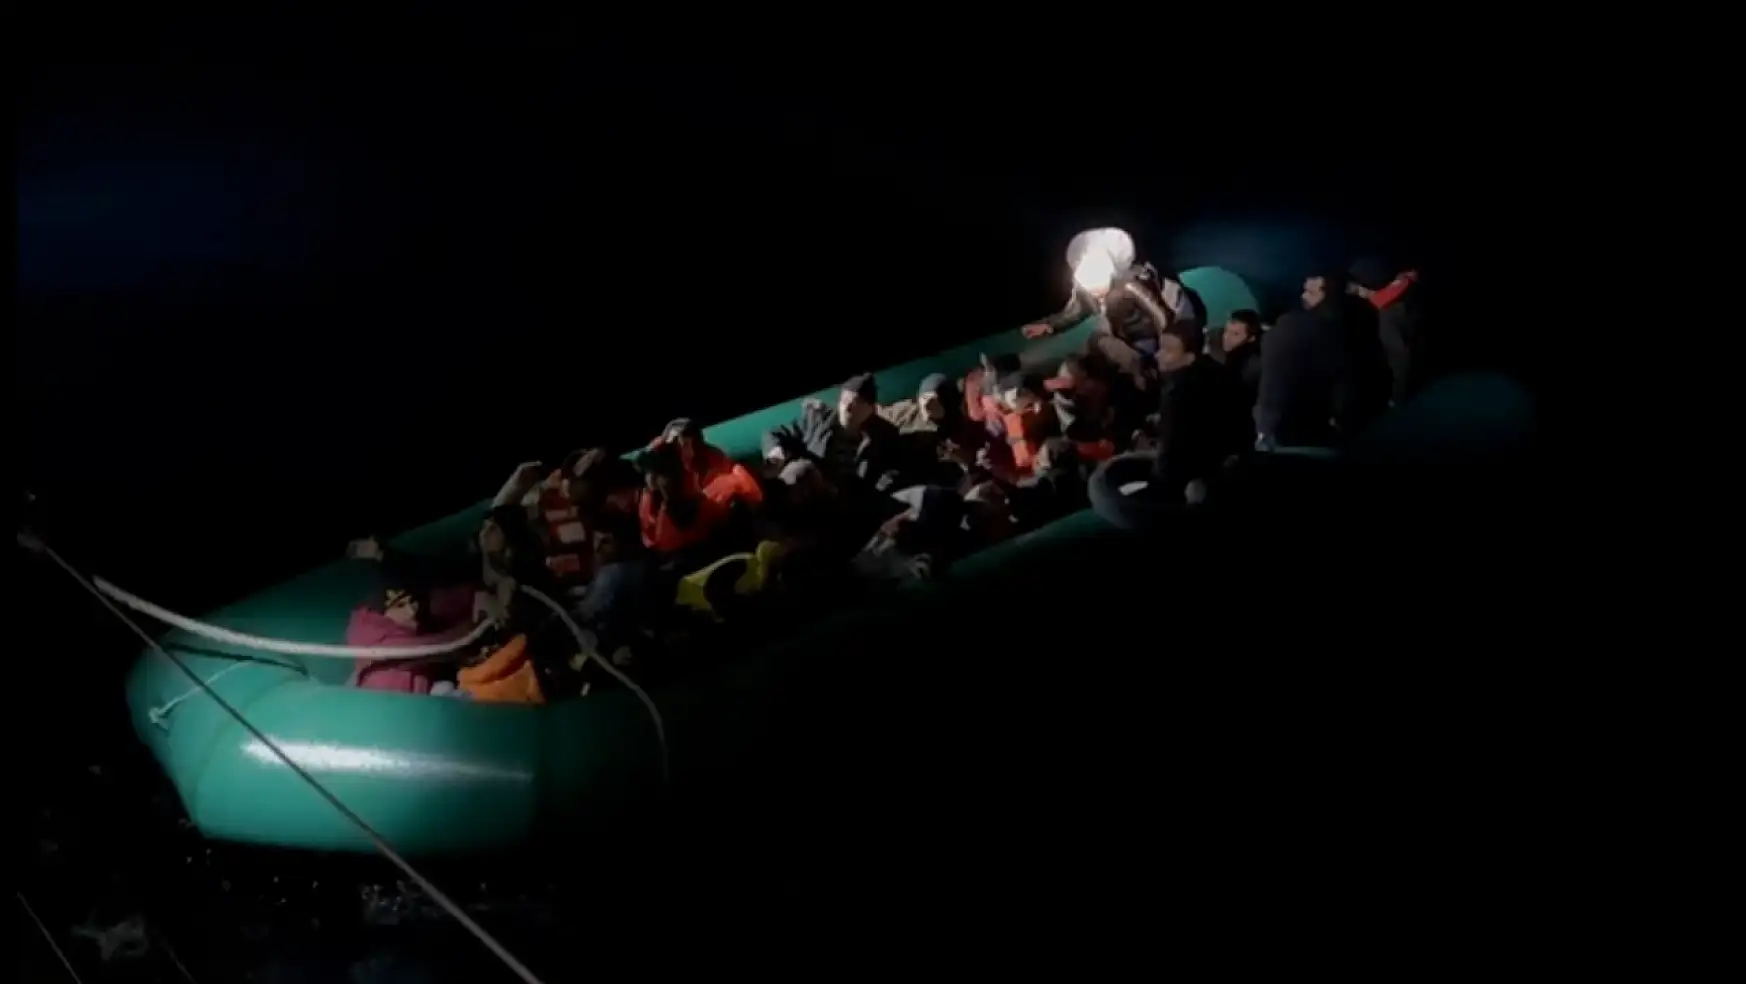 20 göçmen bot üstünde yakalandı